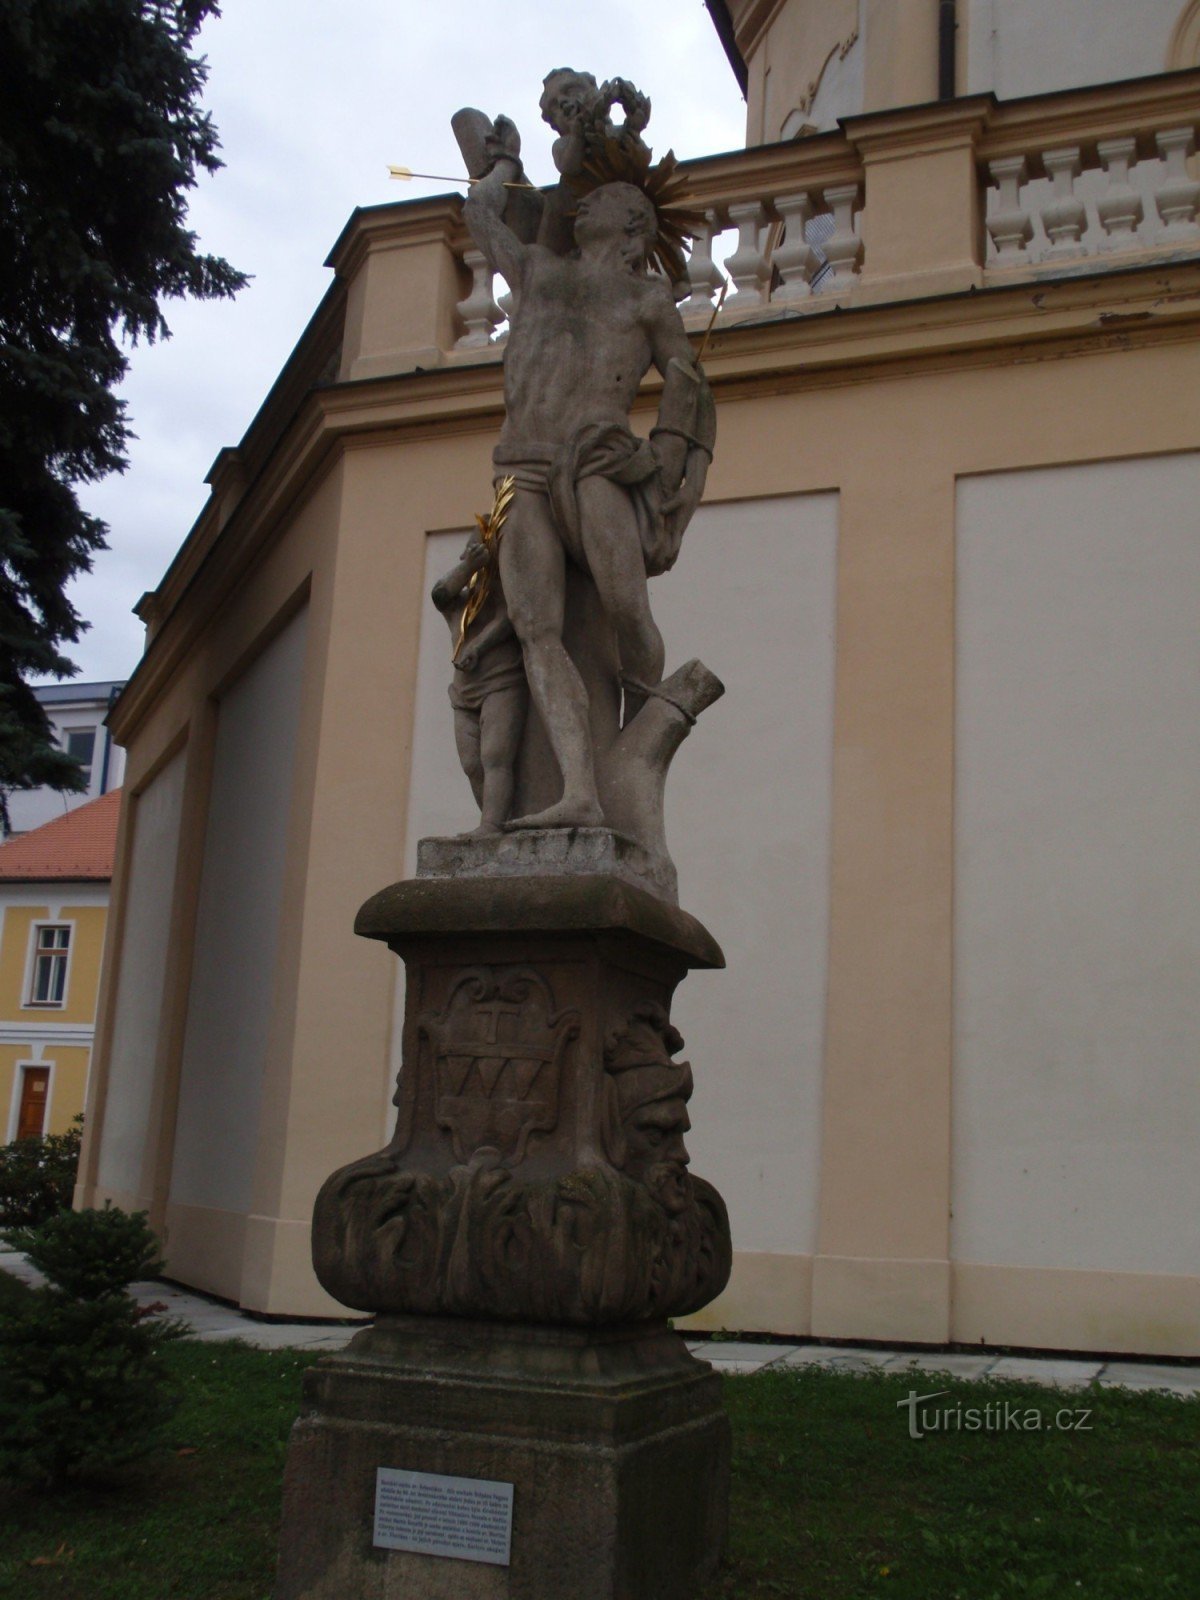 Άγαλμα του Αγ. Ο Sebestián στο Třebíč